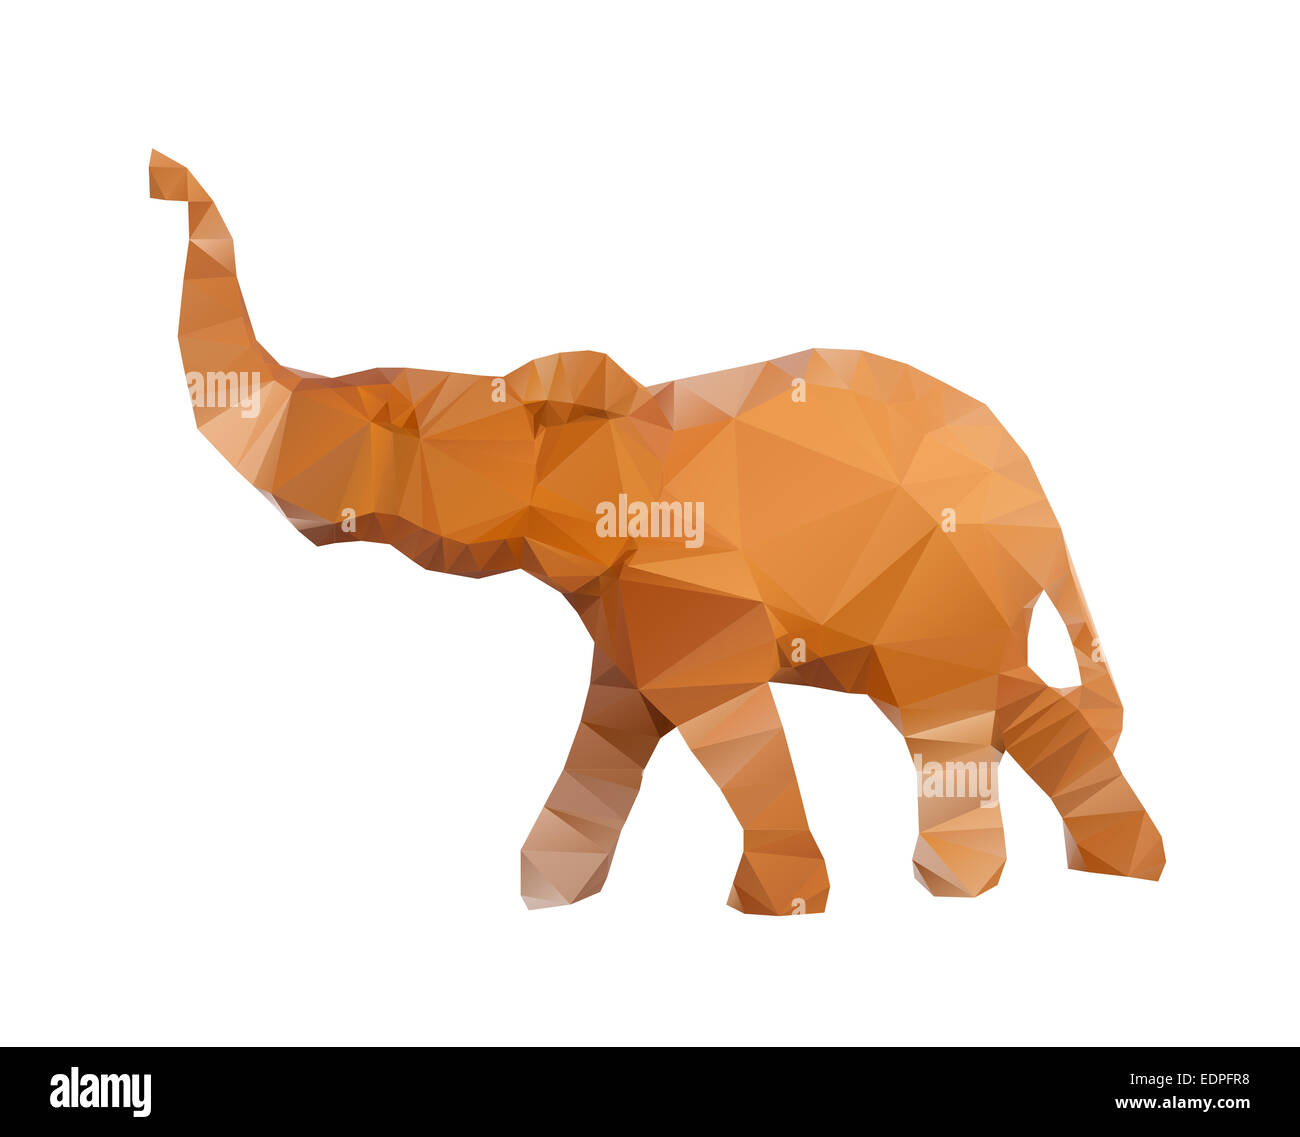 Polygonal illustration of head of elephant isolated on white background Stock Photo